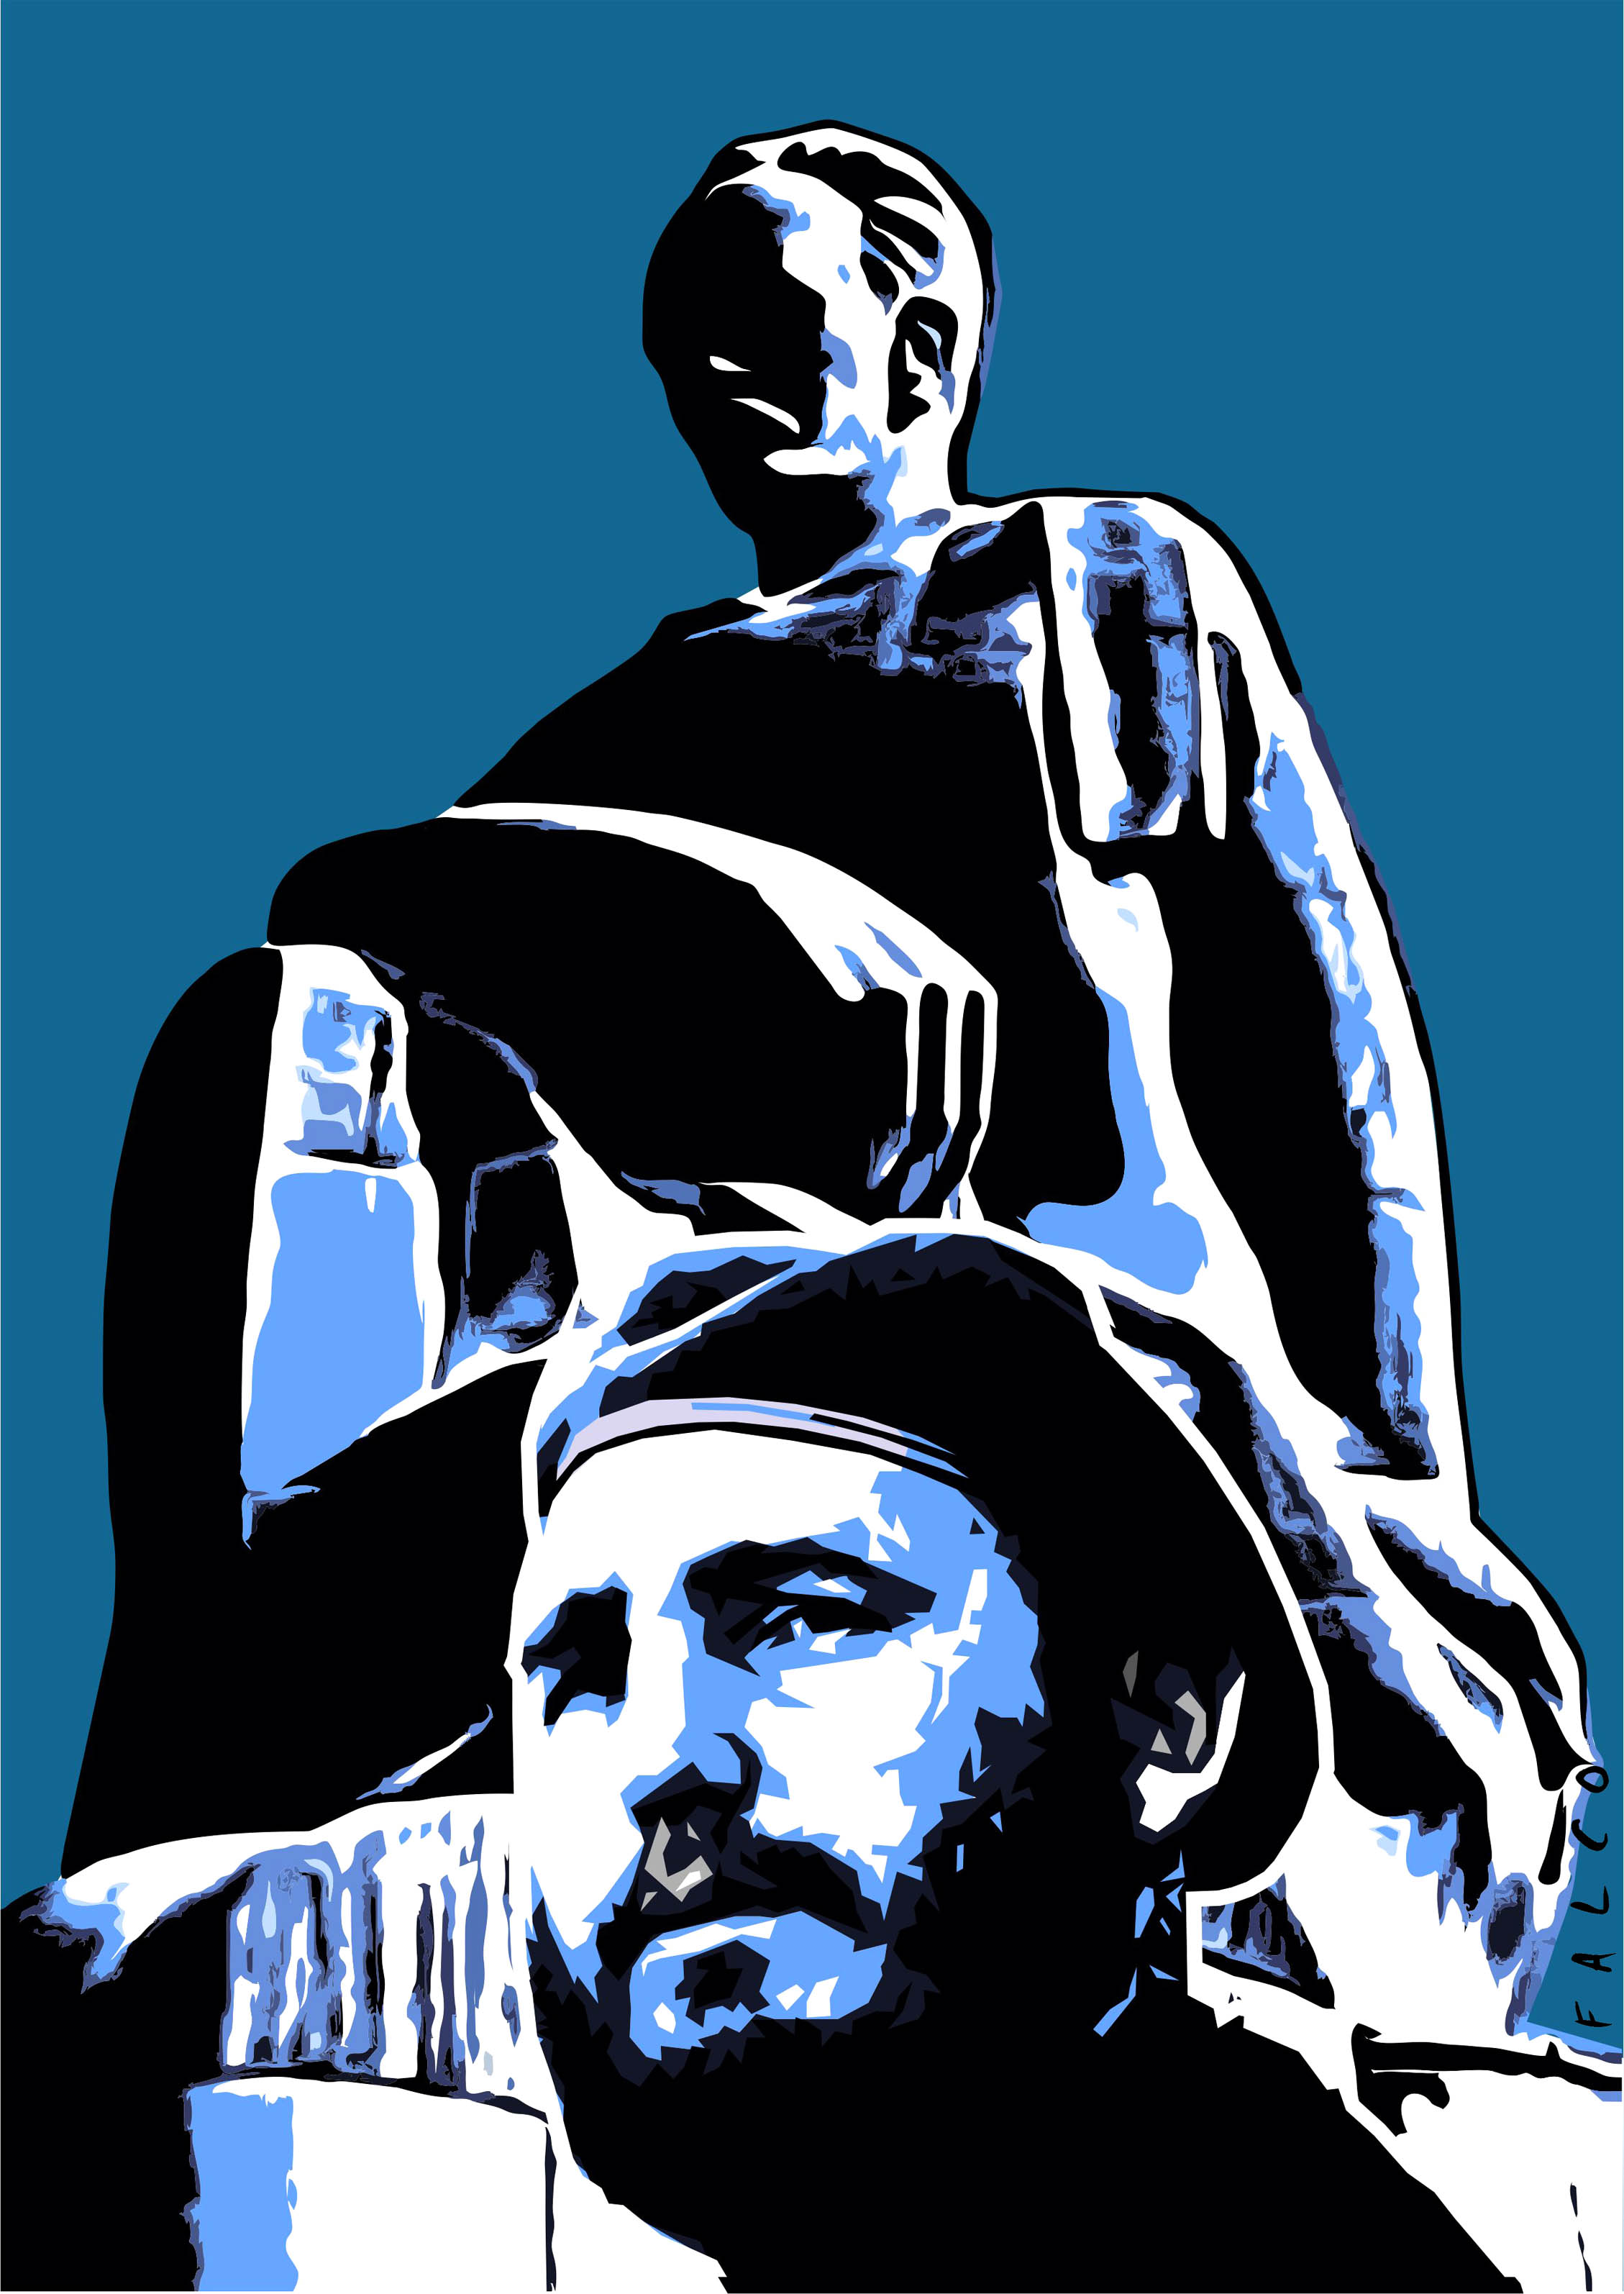 Fidel y Martí